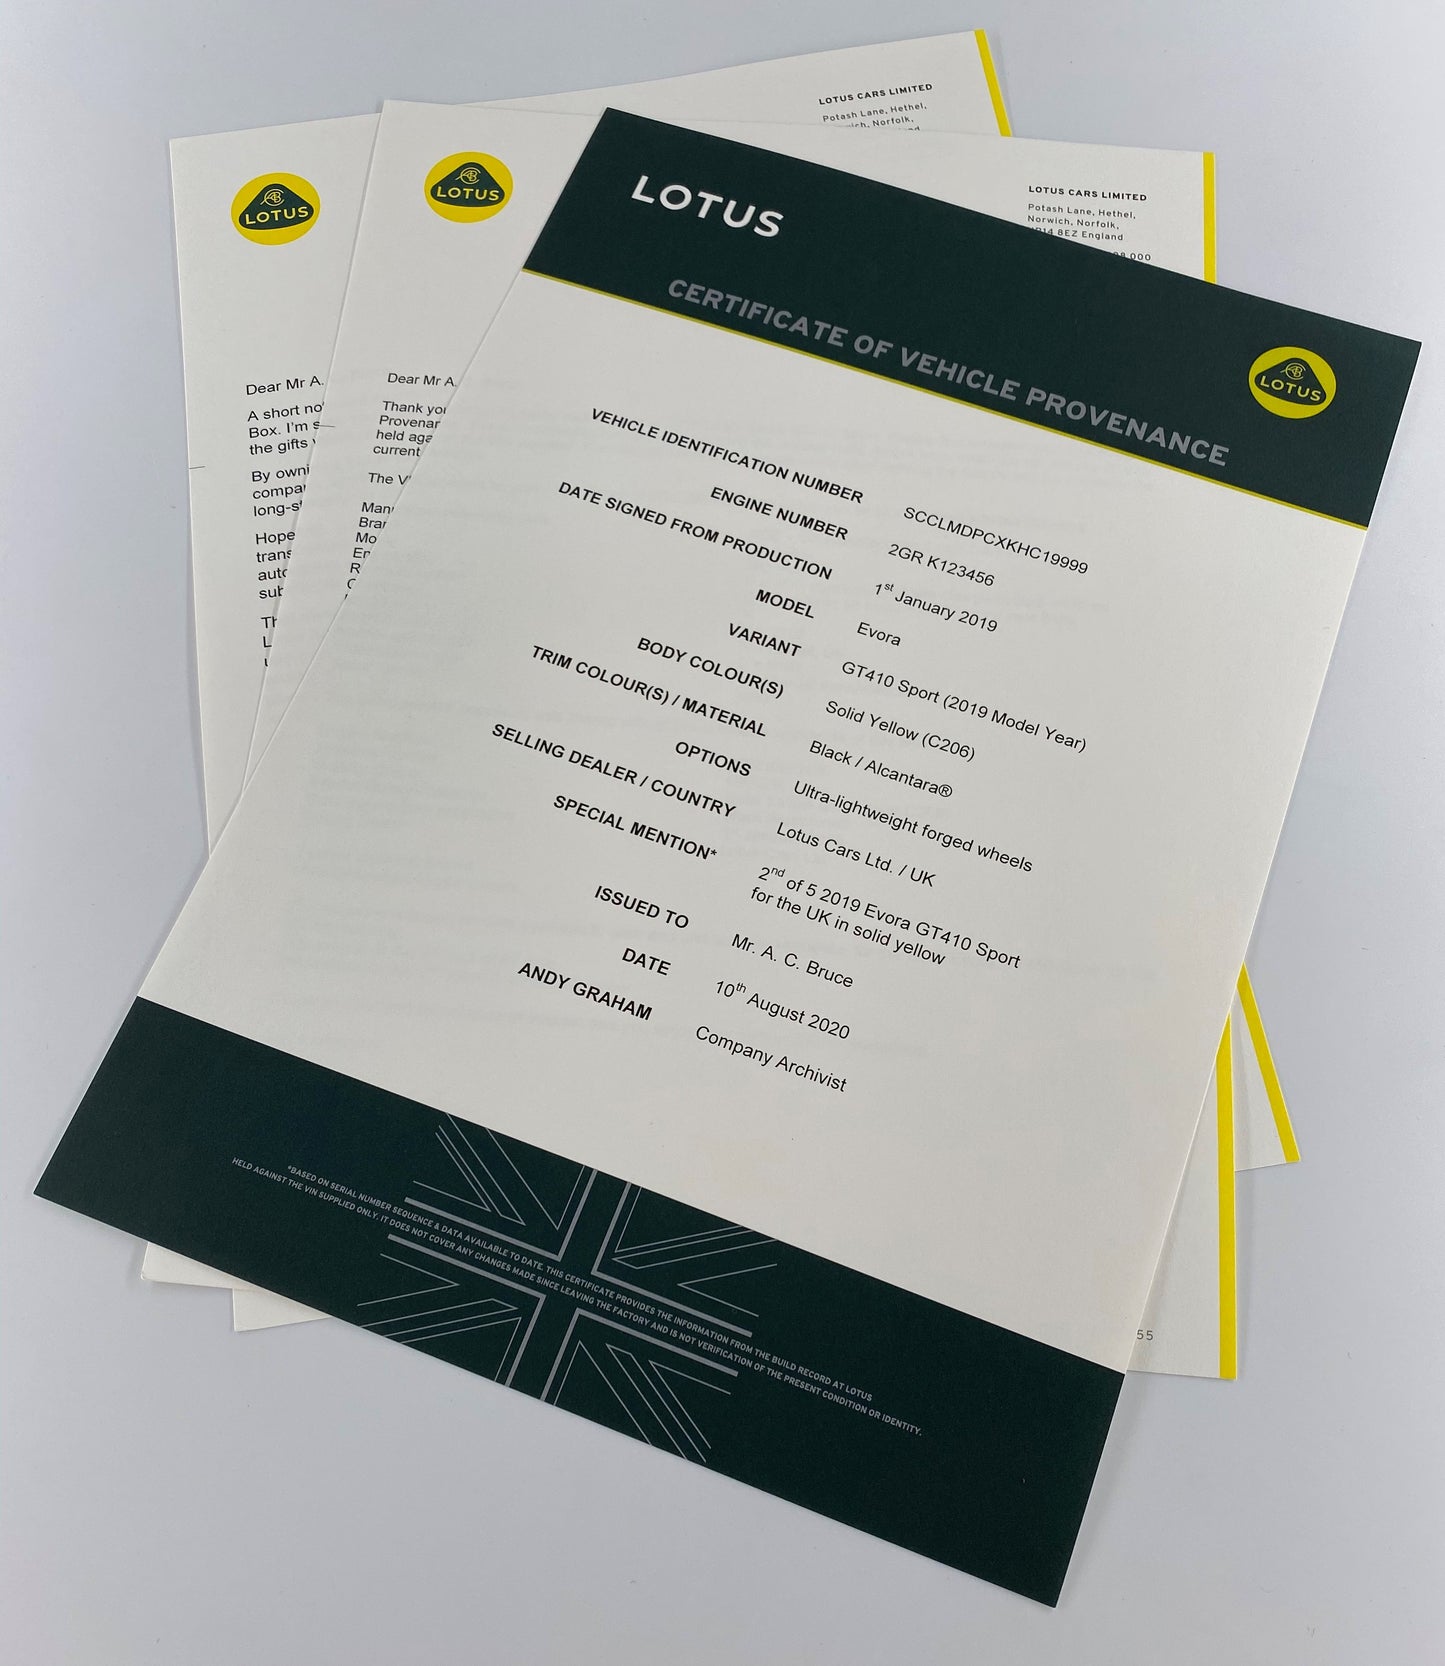 Lotus Certificate of Provenance - Certificato di Provenienza